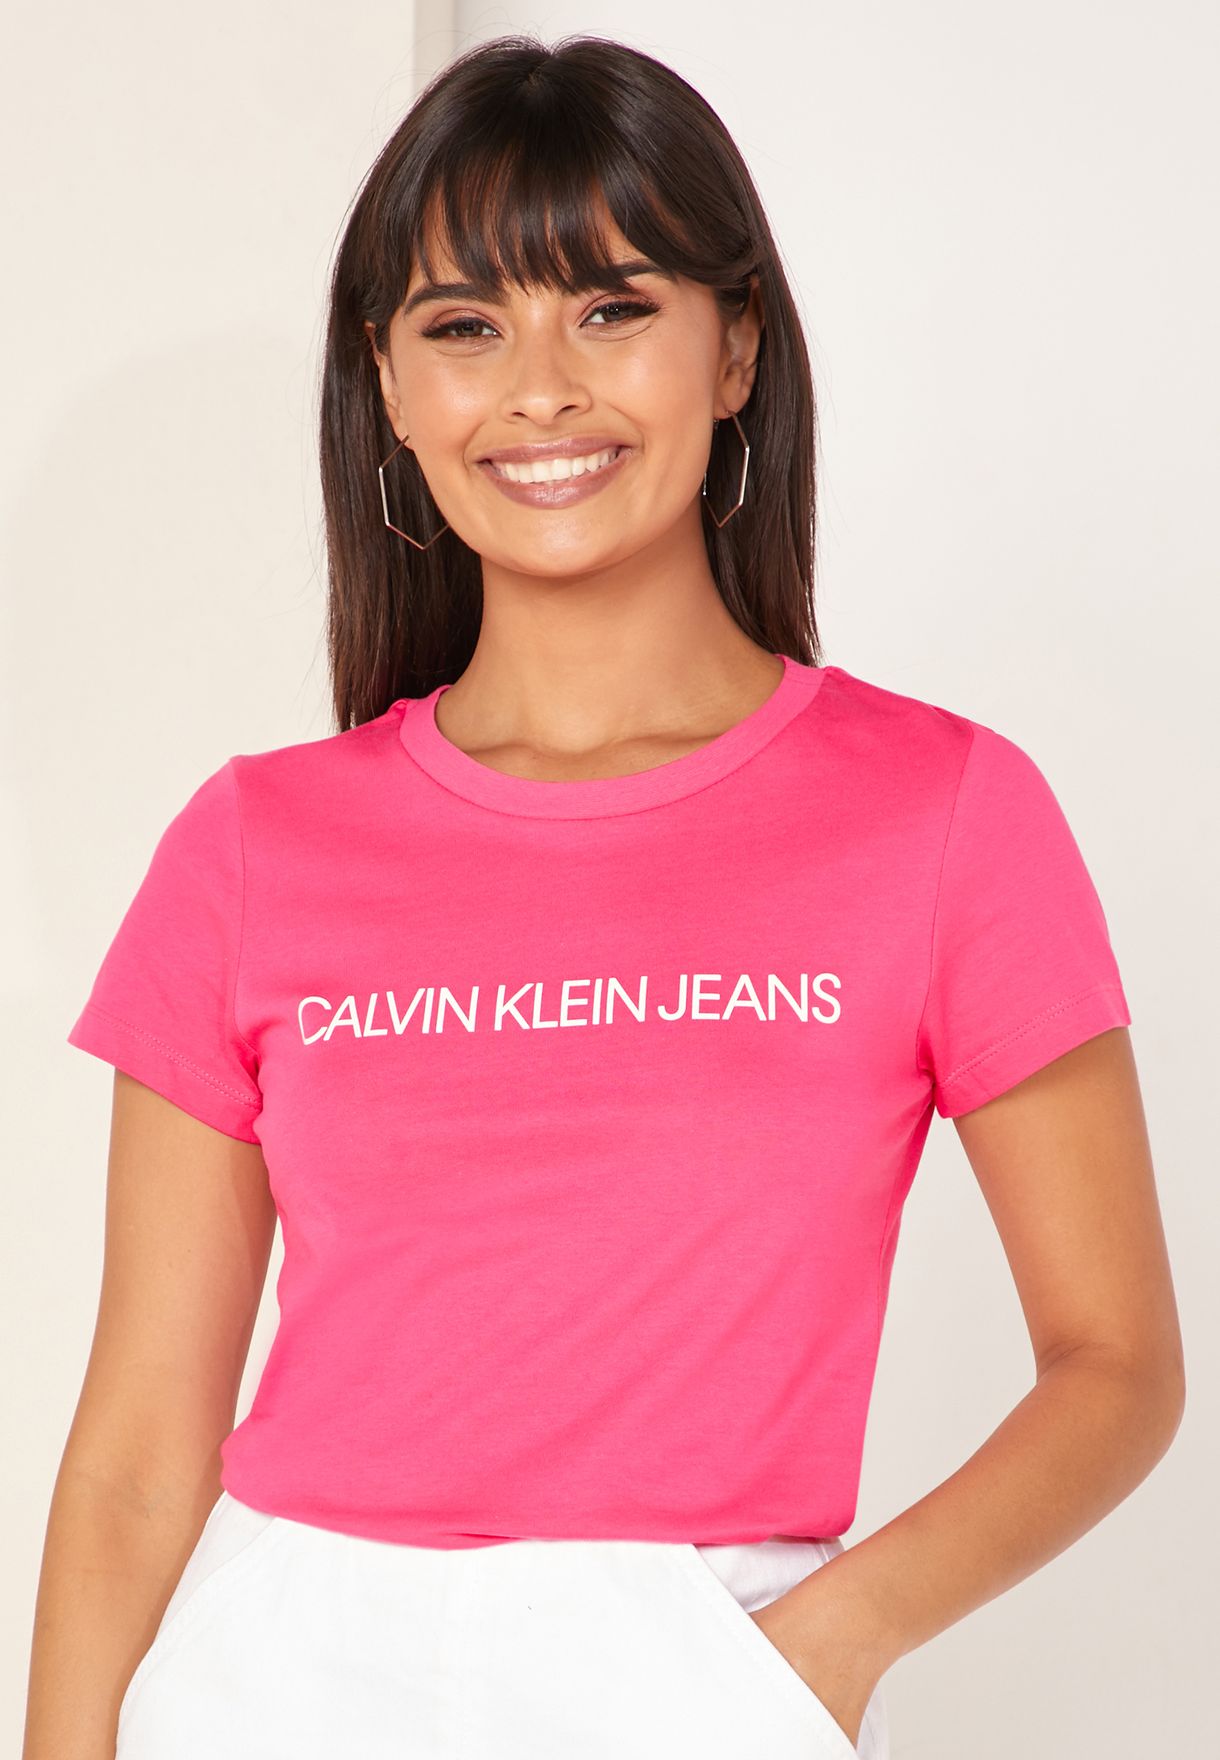 calvin klein jeans pink